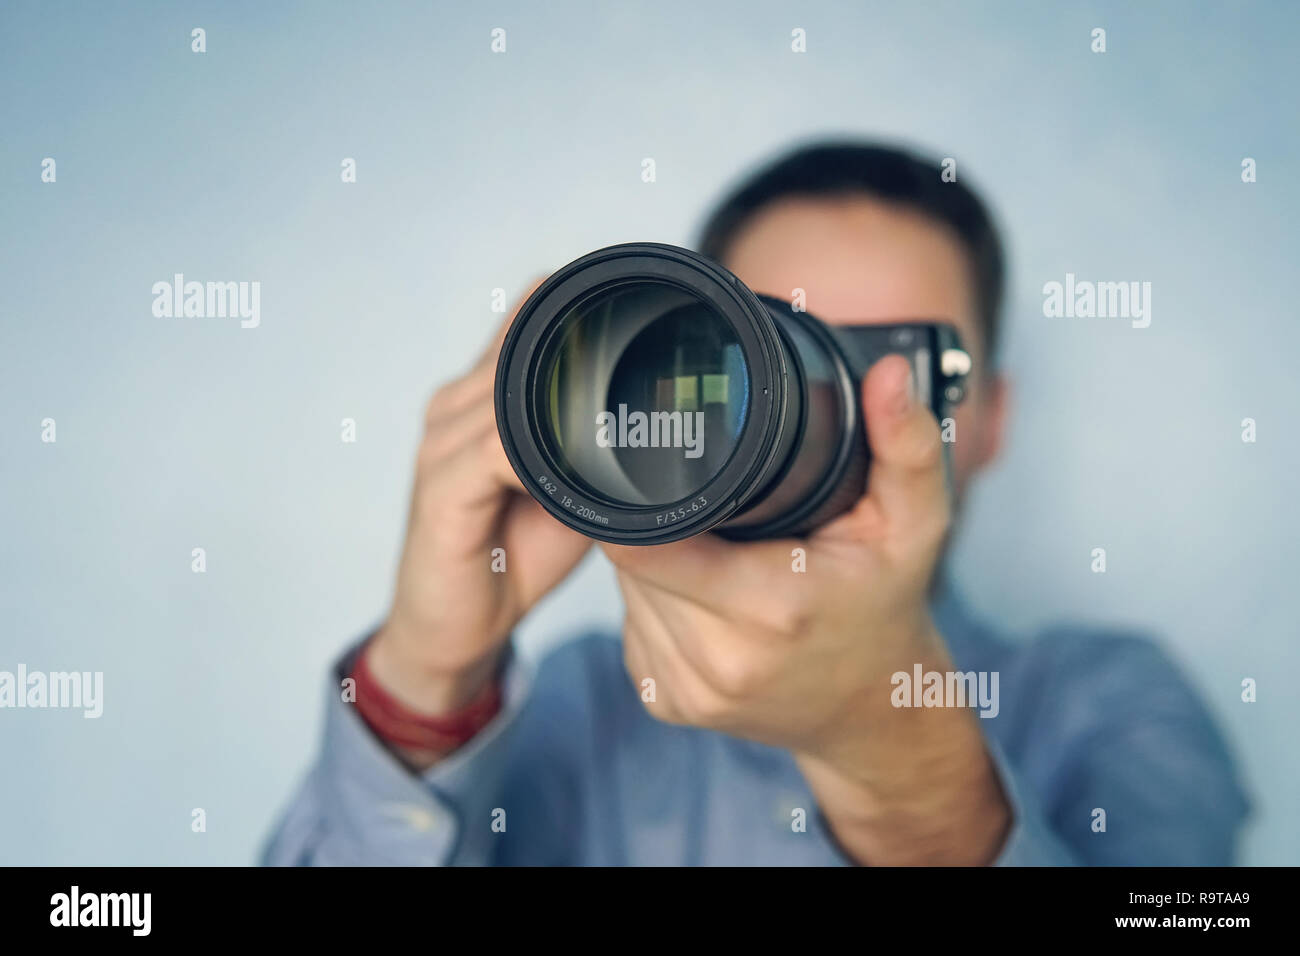 Fotografo maschio photoshooting contro una parete blu sullo sfondo. copyspace, copia, spazio Foto Stock